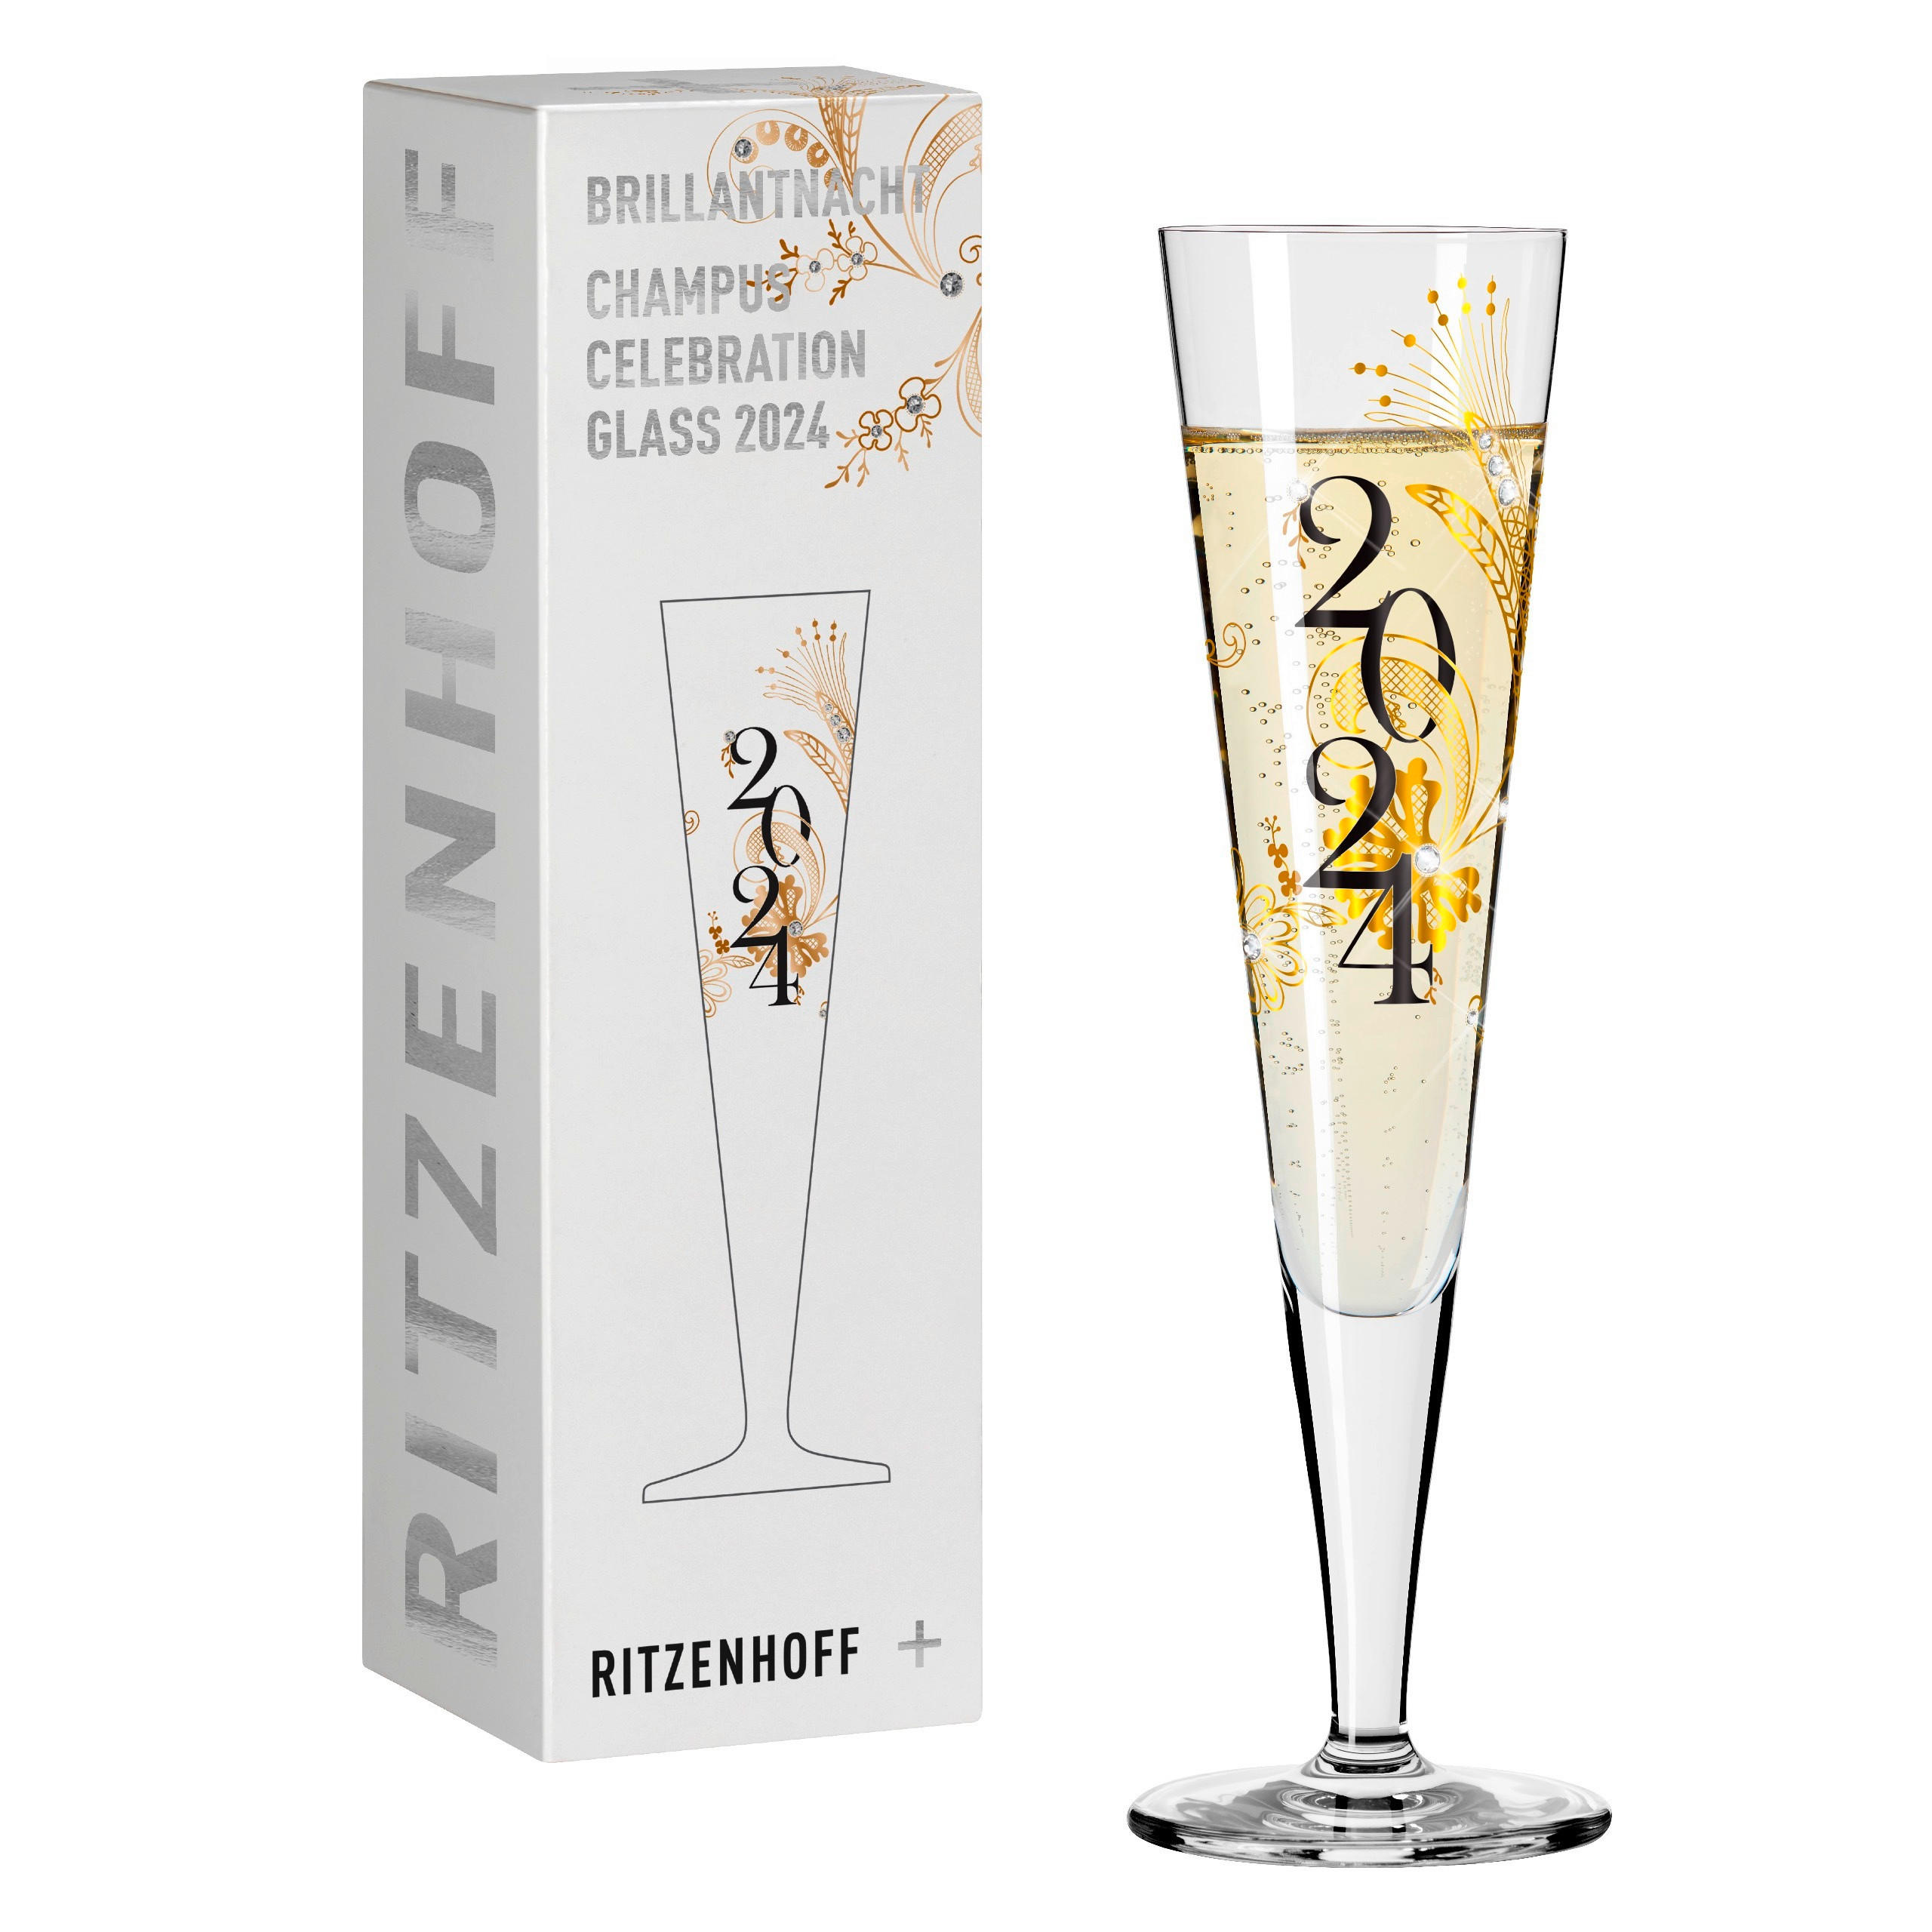 CHAMPAGNERGLAS 205 ml  - Goldfarben/Schwarz, LIFESTYLE, Glas (7,2/24,0/7,2cm) - Ritzenhoff